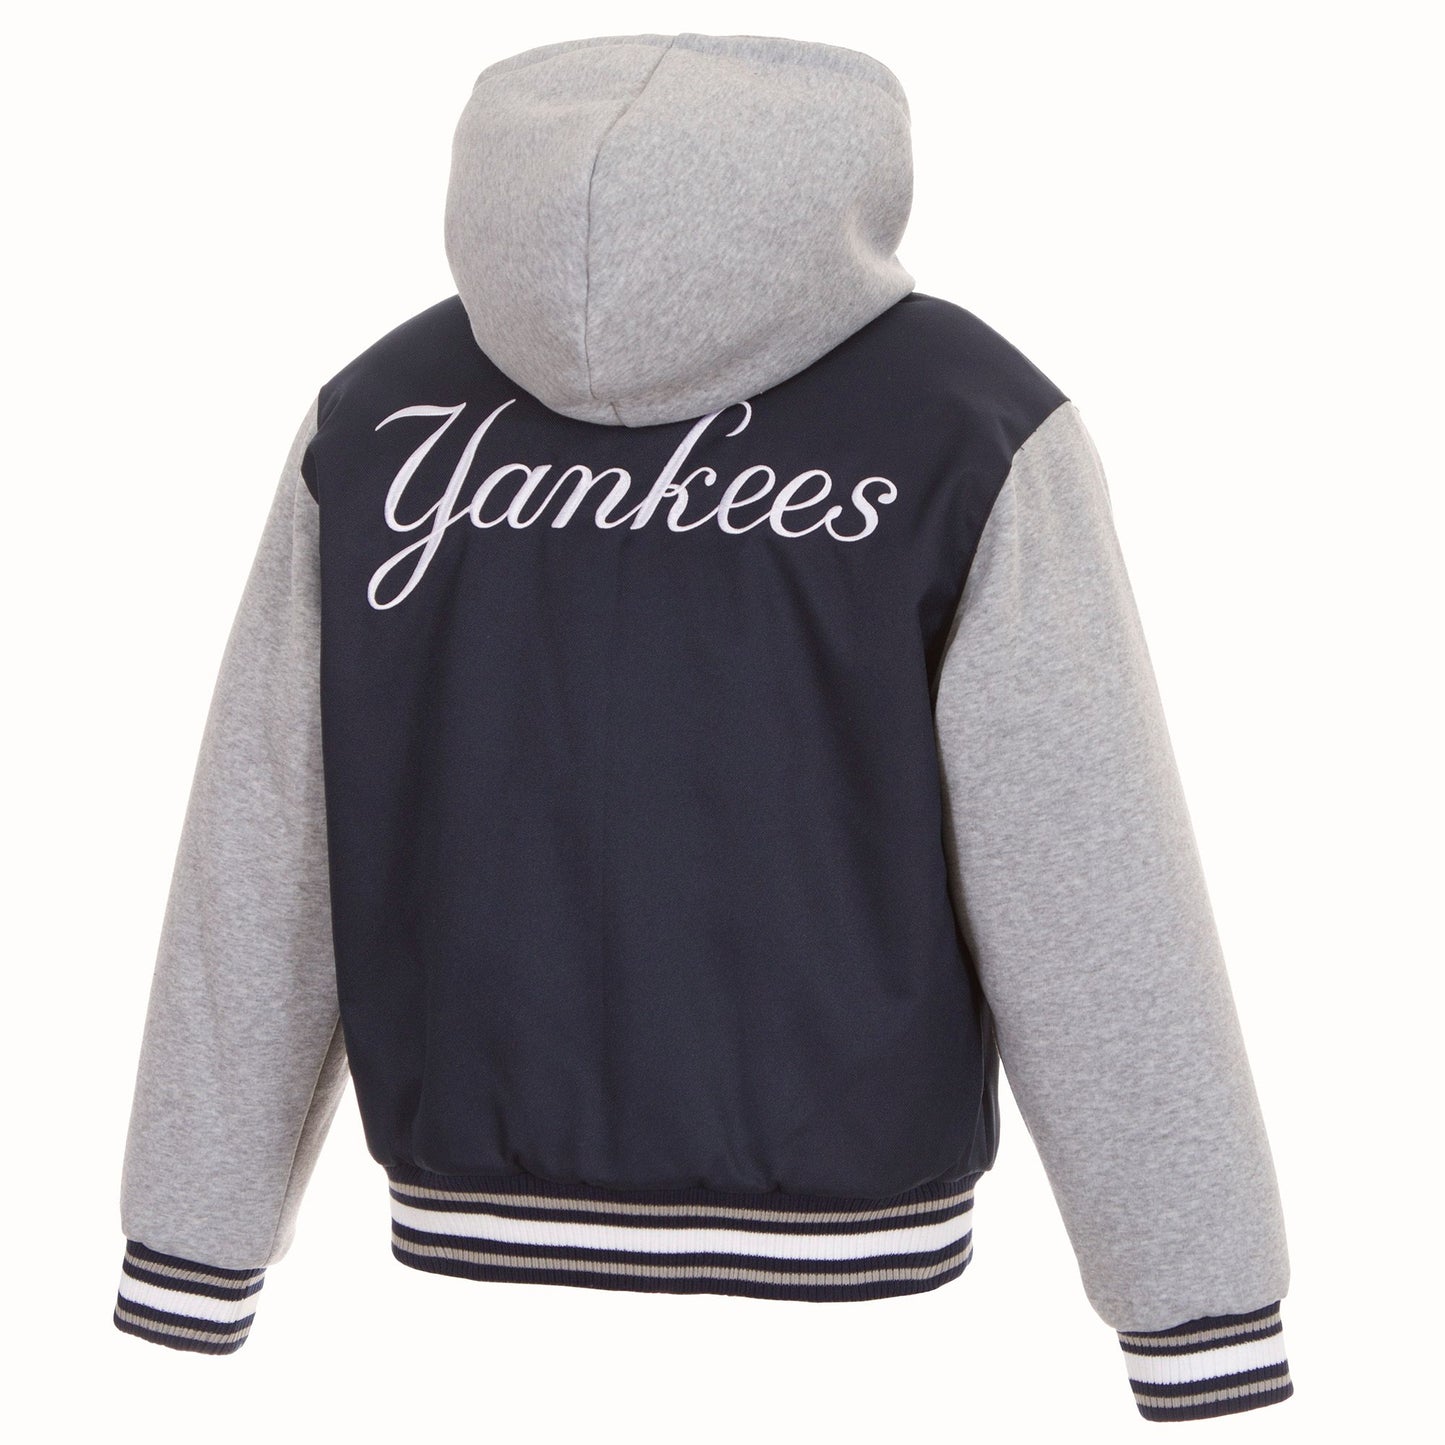 New York Yankees Kid's Reversible Hooded Jacket